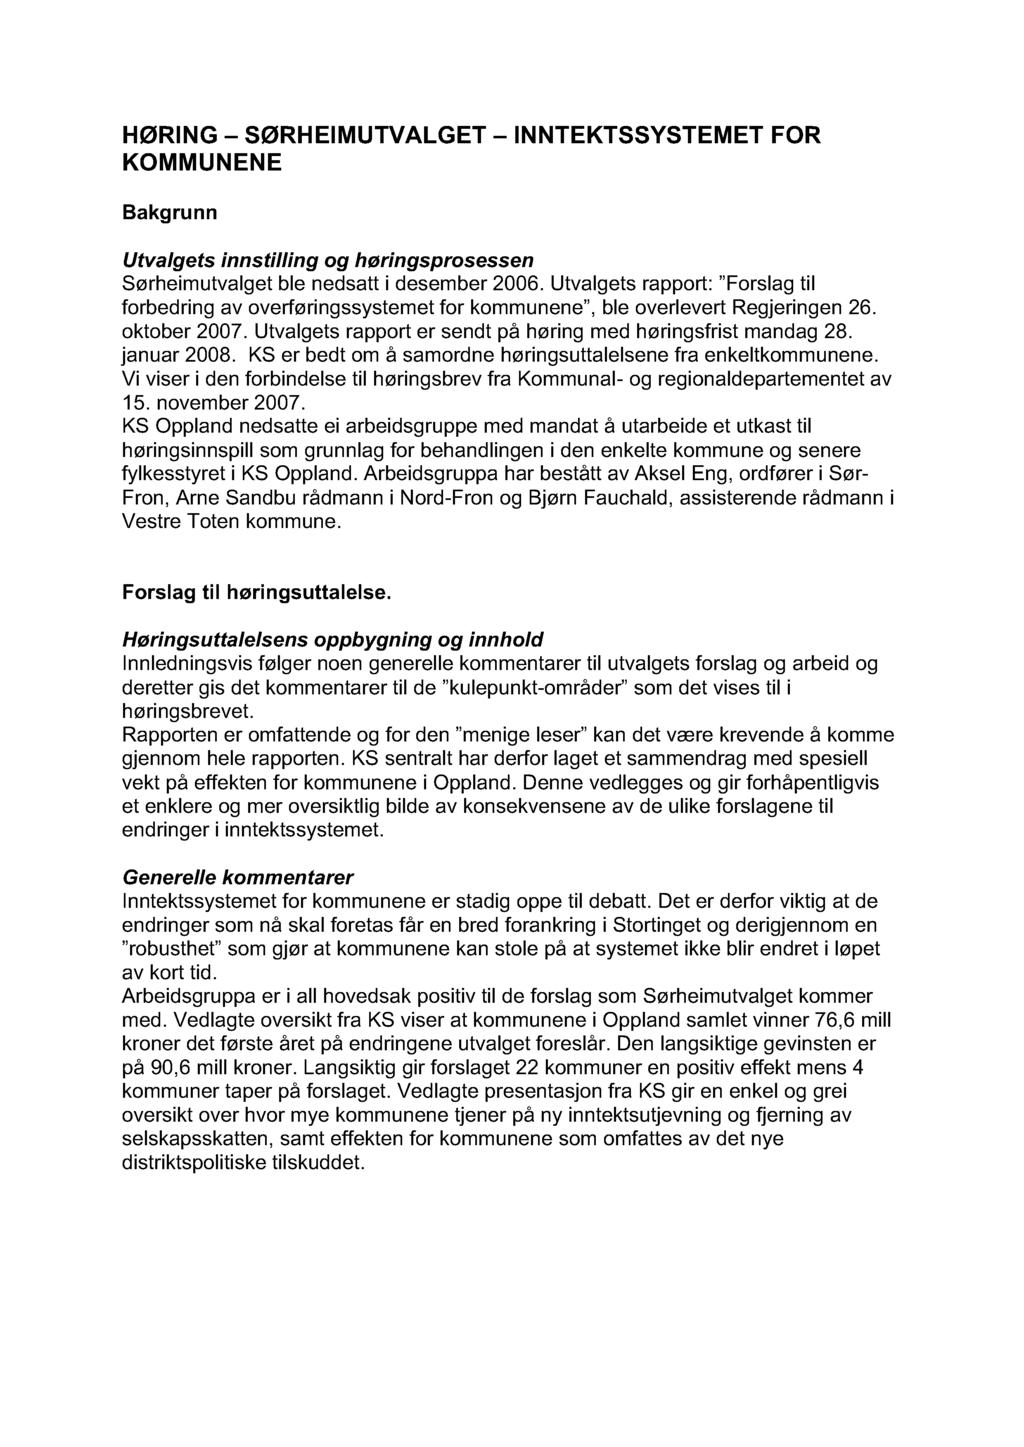 HØRING - SØRHEIMUTVALGET - INNTEKTSSYSTEMET FOR KOMMUNENE Bakgrunn Utvalgets innstilling og høringsprosessen Sørheimutvalget ble nedsatt i desember 2006.